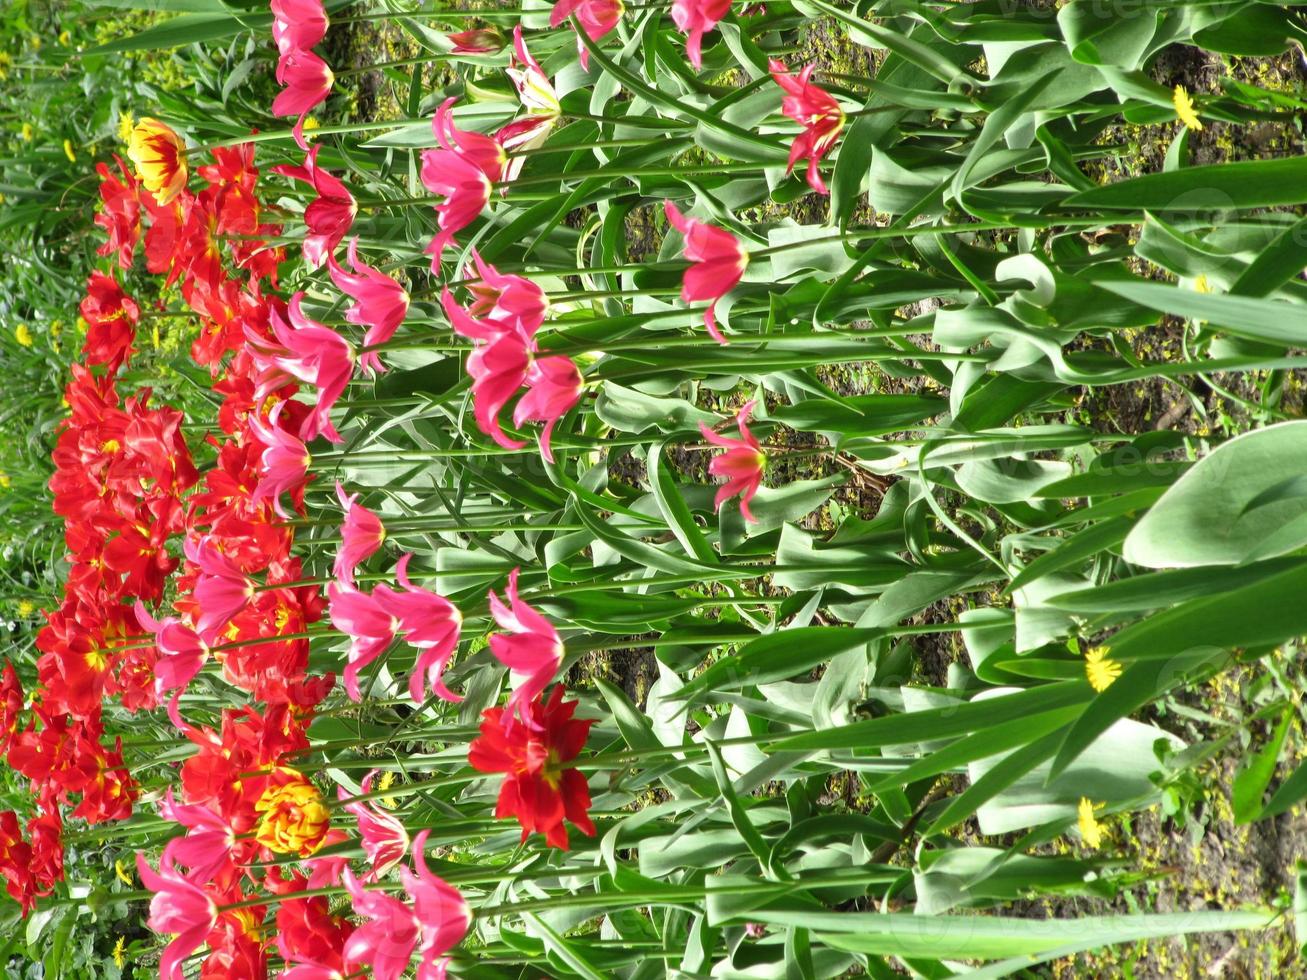 tulipán flor roja floreciente con hojas verdes, naturaleza viva foto